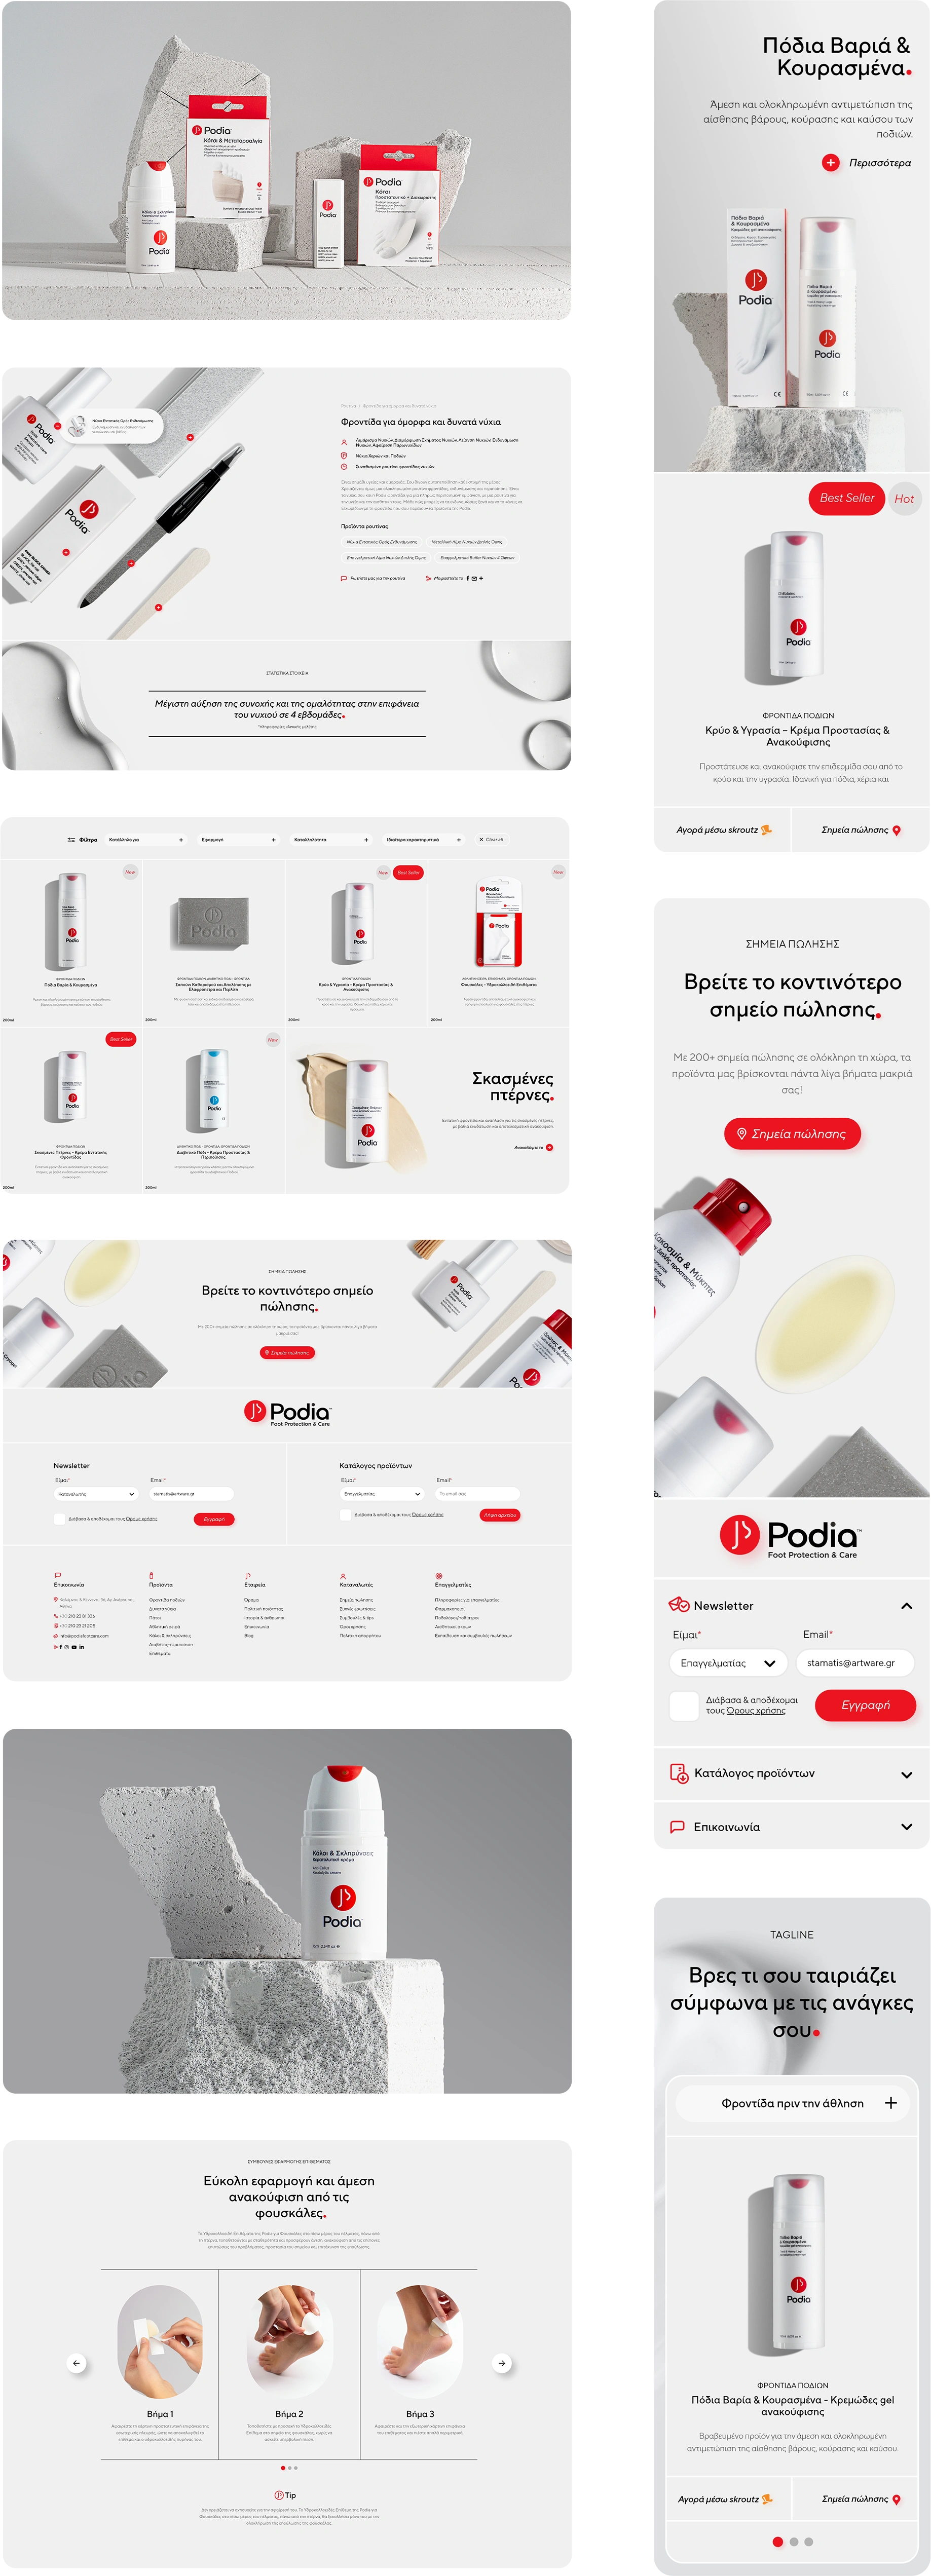 Σχεδίαση και κατασκευή ιστοσελίδας - Podia Footcare - Εταιρία φαρμακευτικών και καλλυντικών προϊόντων ποδιών - Artware